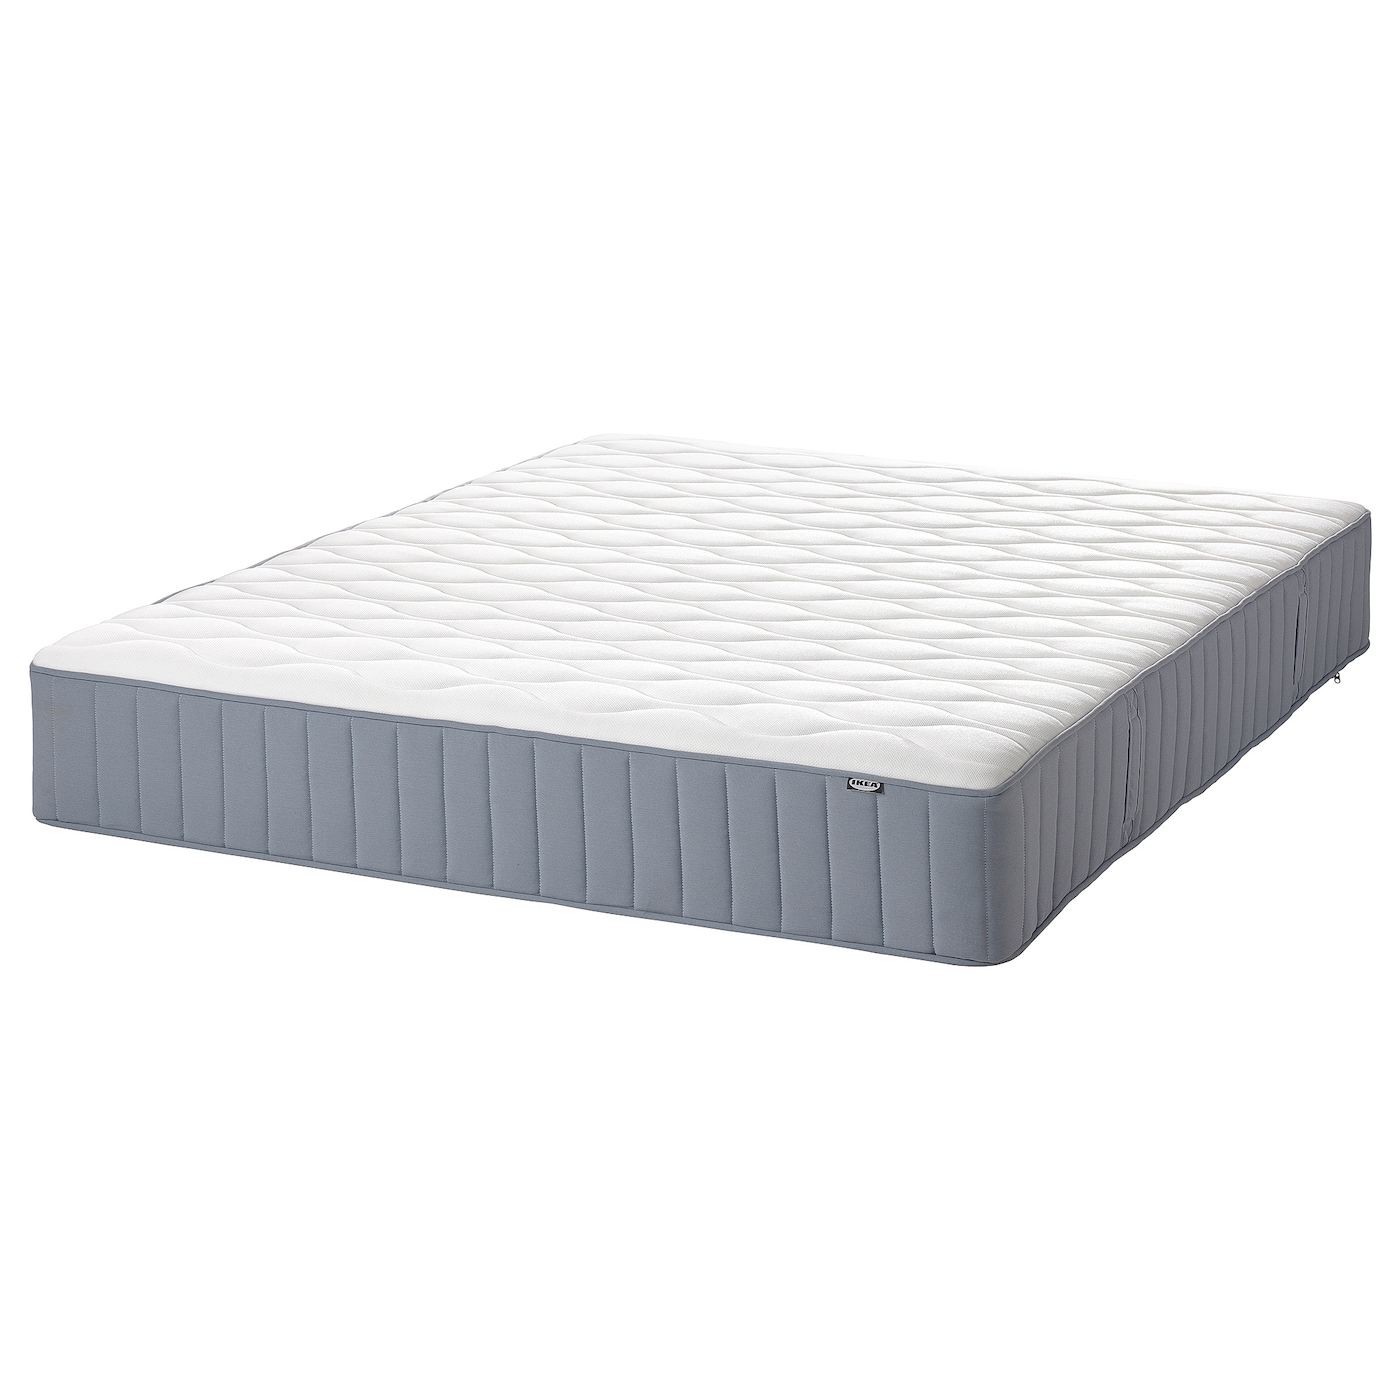 Матрас для односпальной кровати - VÅGSTRANDA IKEA/ВОГСТРАНДА ИКЕА, 160х200 см, белый